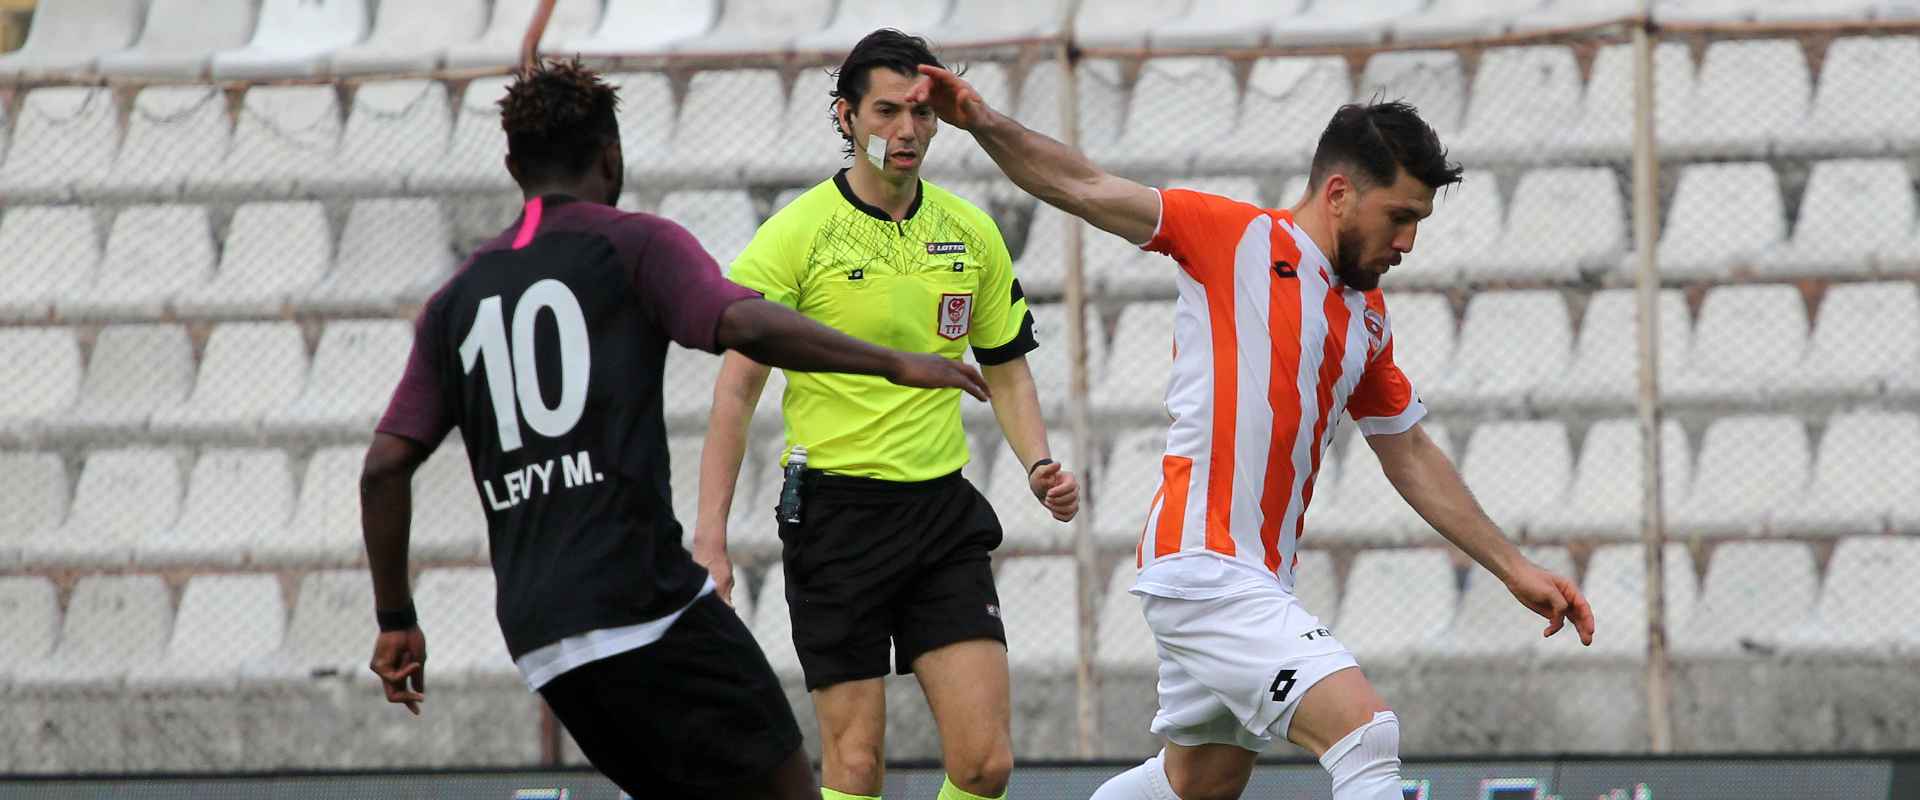 Adanaspor'umuz 1-1 Keçiörengücü